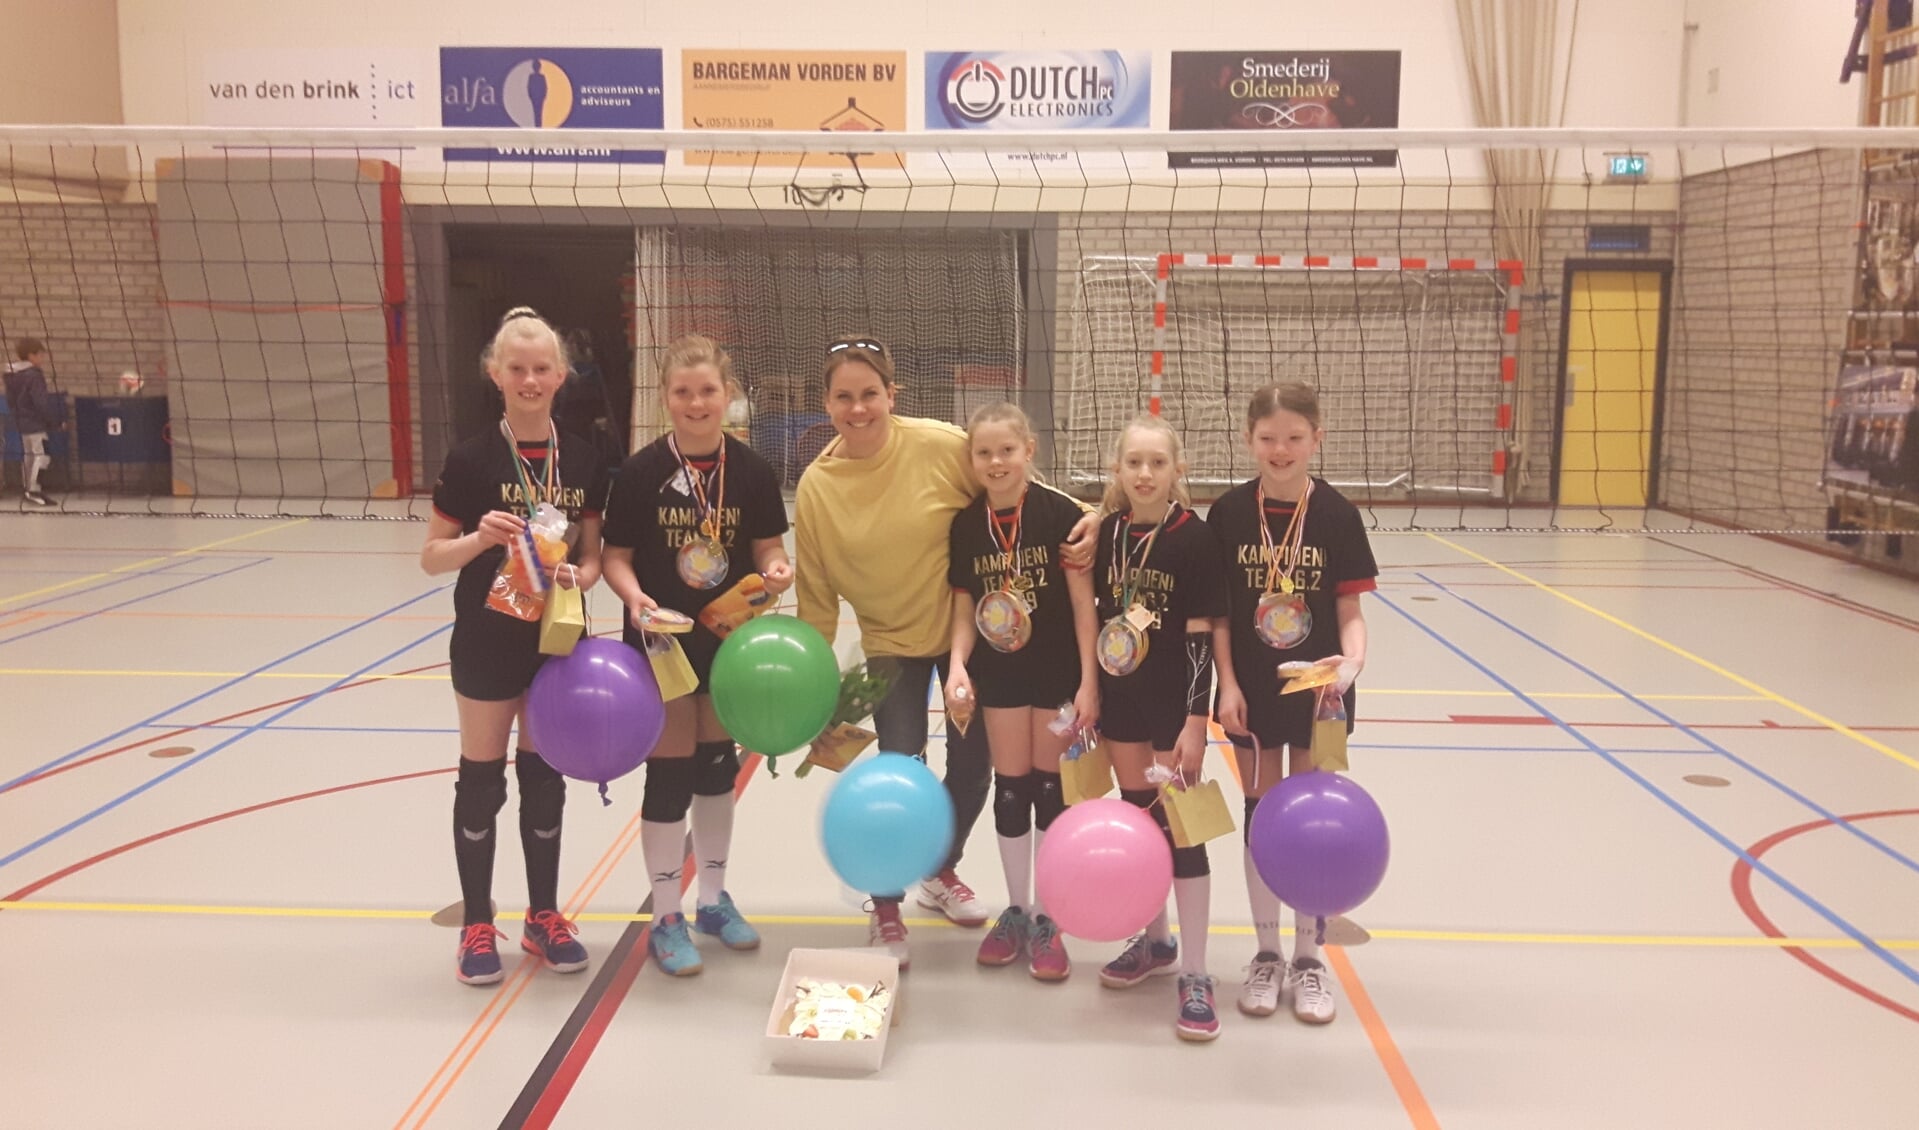 Faya, Anne, Mies, Inge en Esmee met trainer Hanneke. Foto: PR